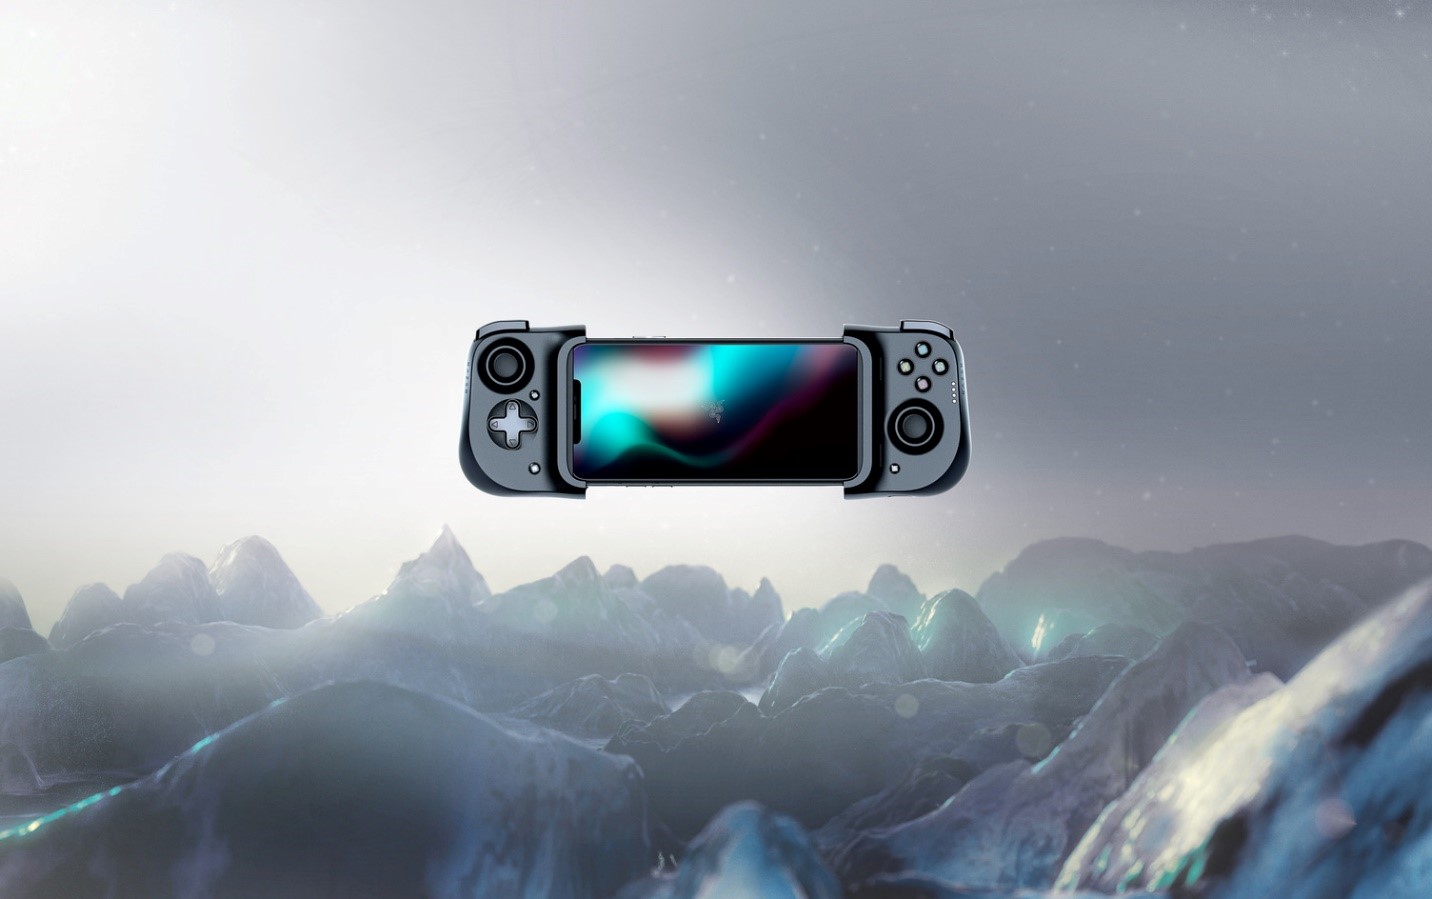 Razer, anunció la disponibilidad inmediata del Control Universal para Gaming Razer Kishi para iPhone, una versión para iOS del accesorio móvil